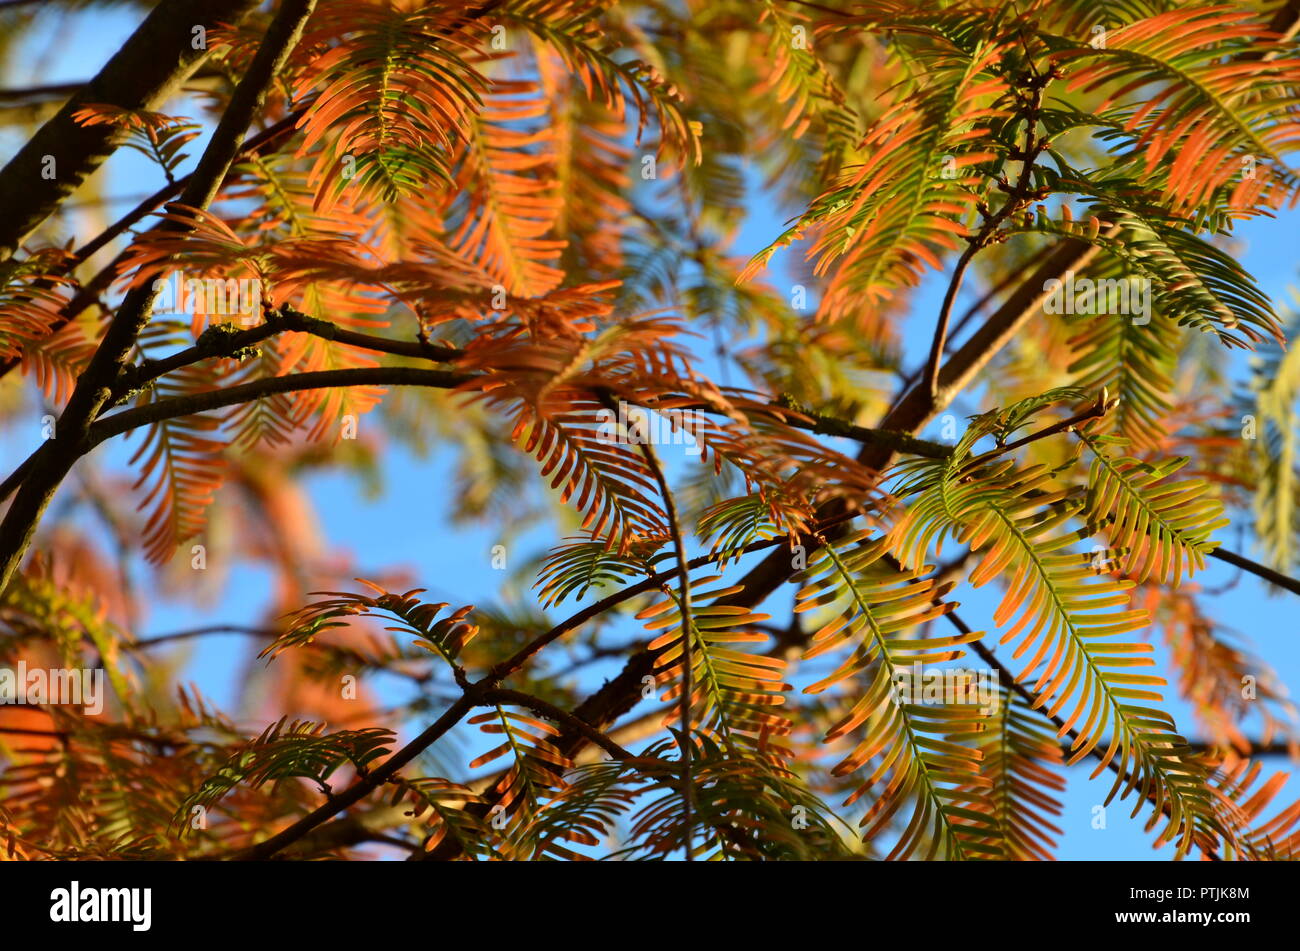 Redwood Baum im Herbst Farben, Herbst Laub, Tannennadeln, blauer Himmel, sonnig, Herbst Impressionen, Baum, Sequoia Stockfoto